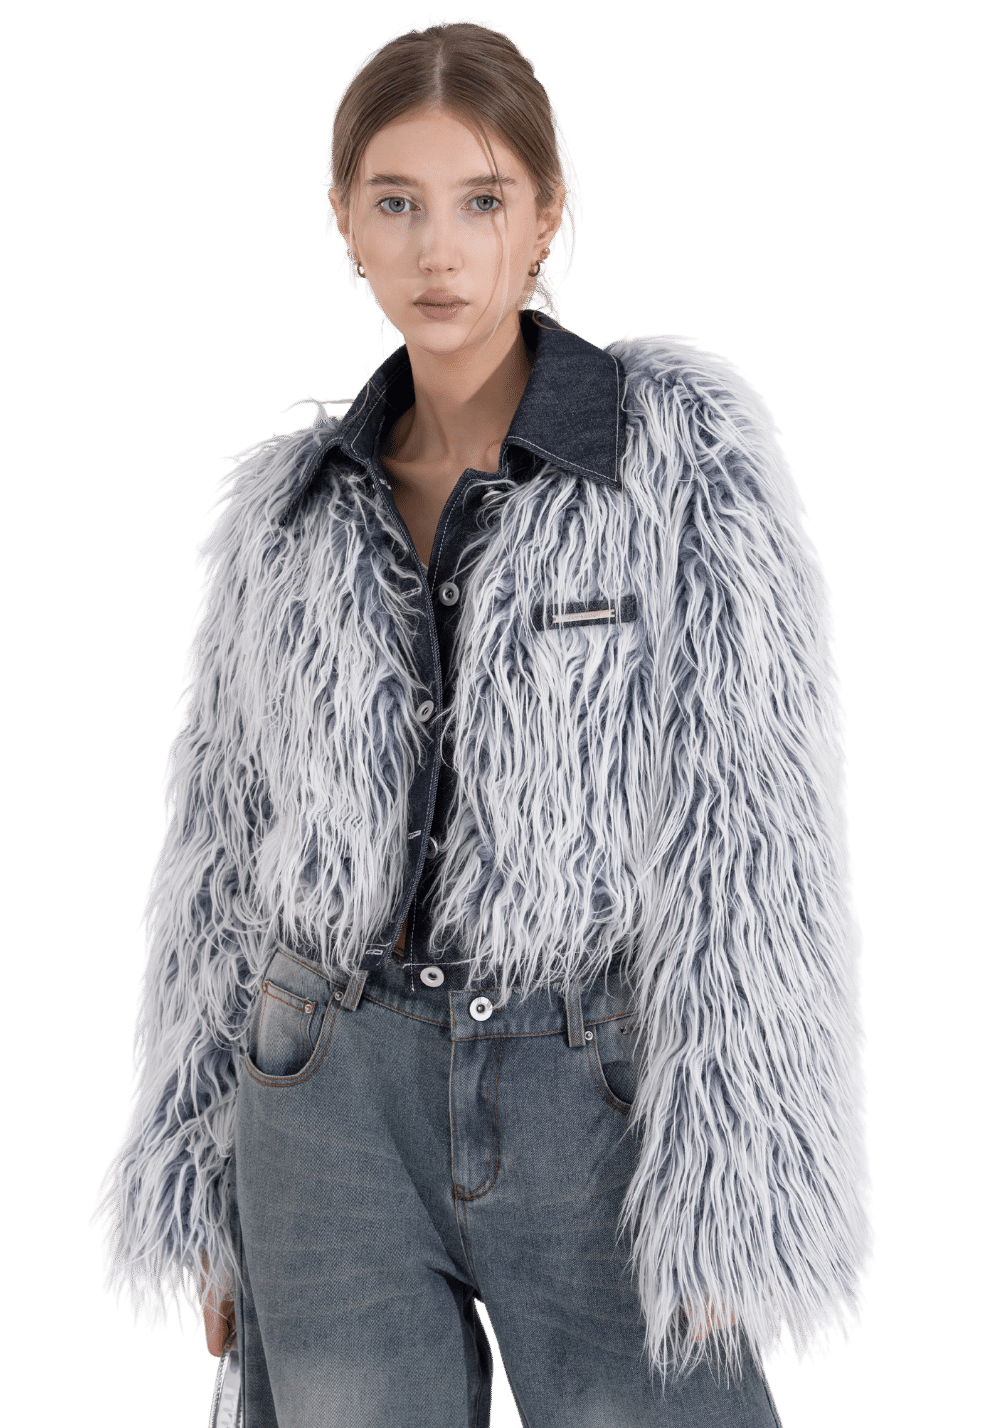 Denim Patchwork Fur Jacket - PSYLOS 1, Denim Patchwork Fur Jacket, Jacket, Jqwention, PSYLOS 1